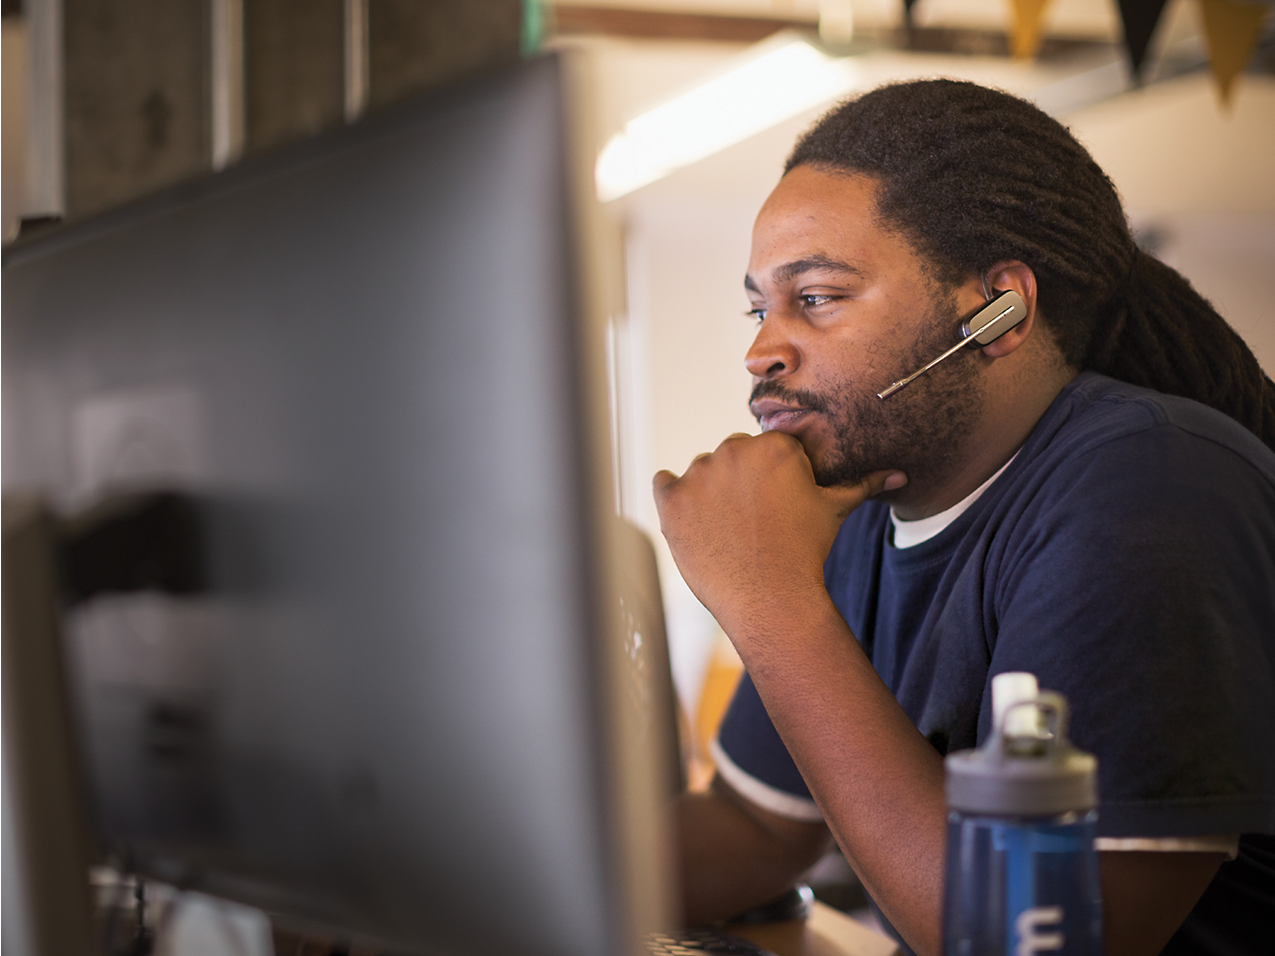 Seorang pria menggunakan headset bekerja dengan fokus menggunakan komputer di dalam lingkungan kantor, tangan di dagu, sedang berpikir mendalam.